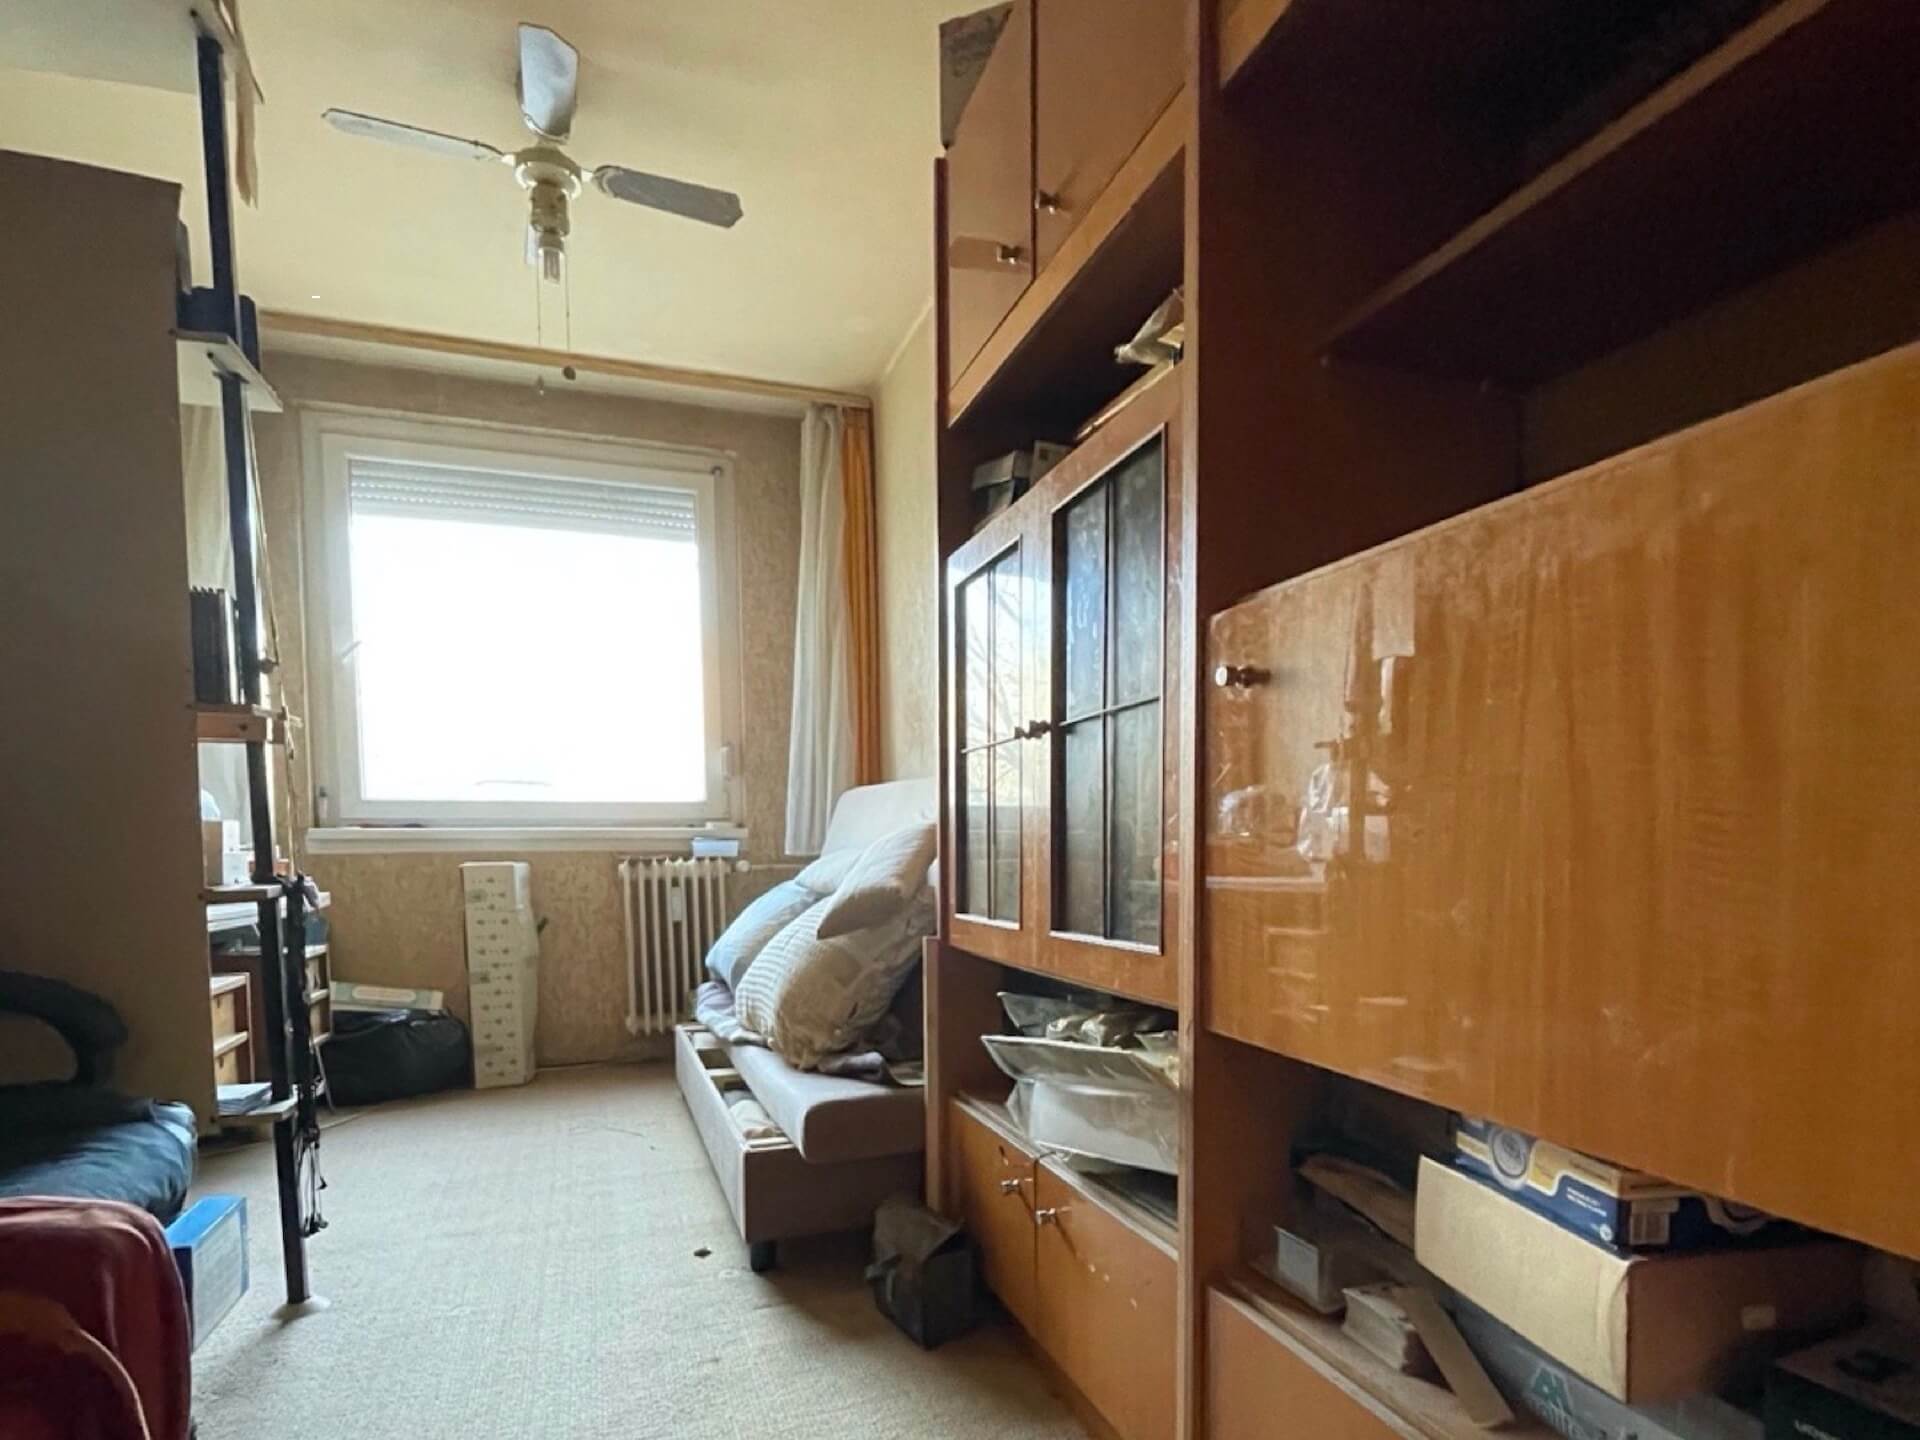 Eladó Hild Viktor utcai lakás szobája